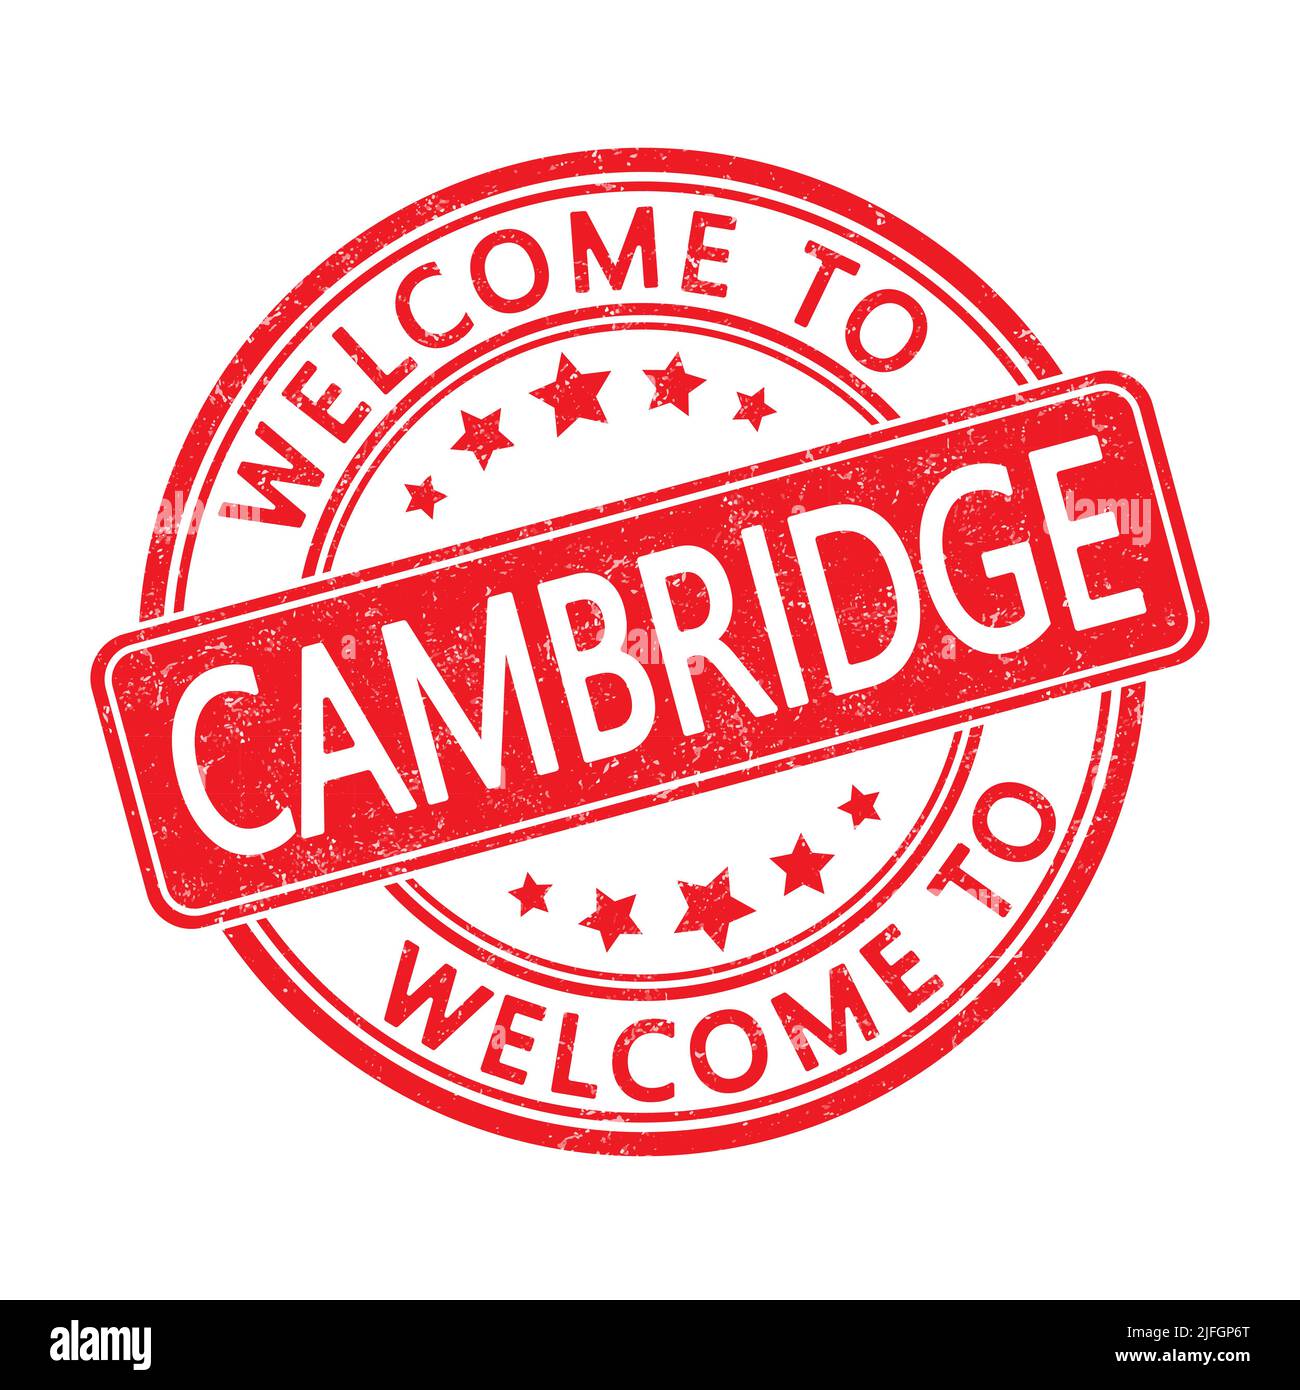 Willkommen in Cambridge. Abdruck einer runden Marke mit einem Abrieb. Flacher Style Stock Vektor